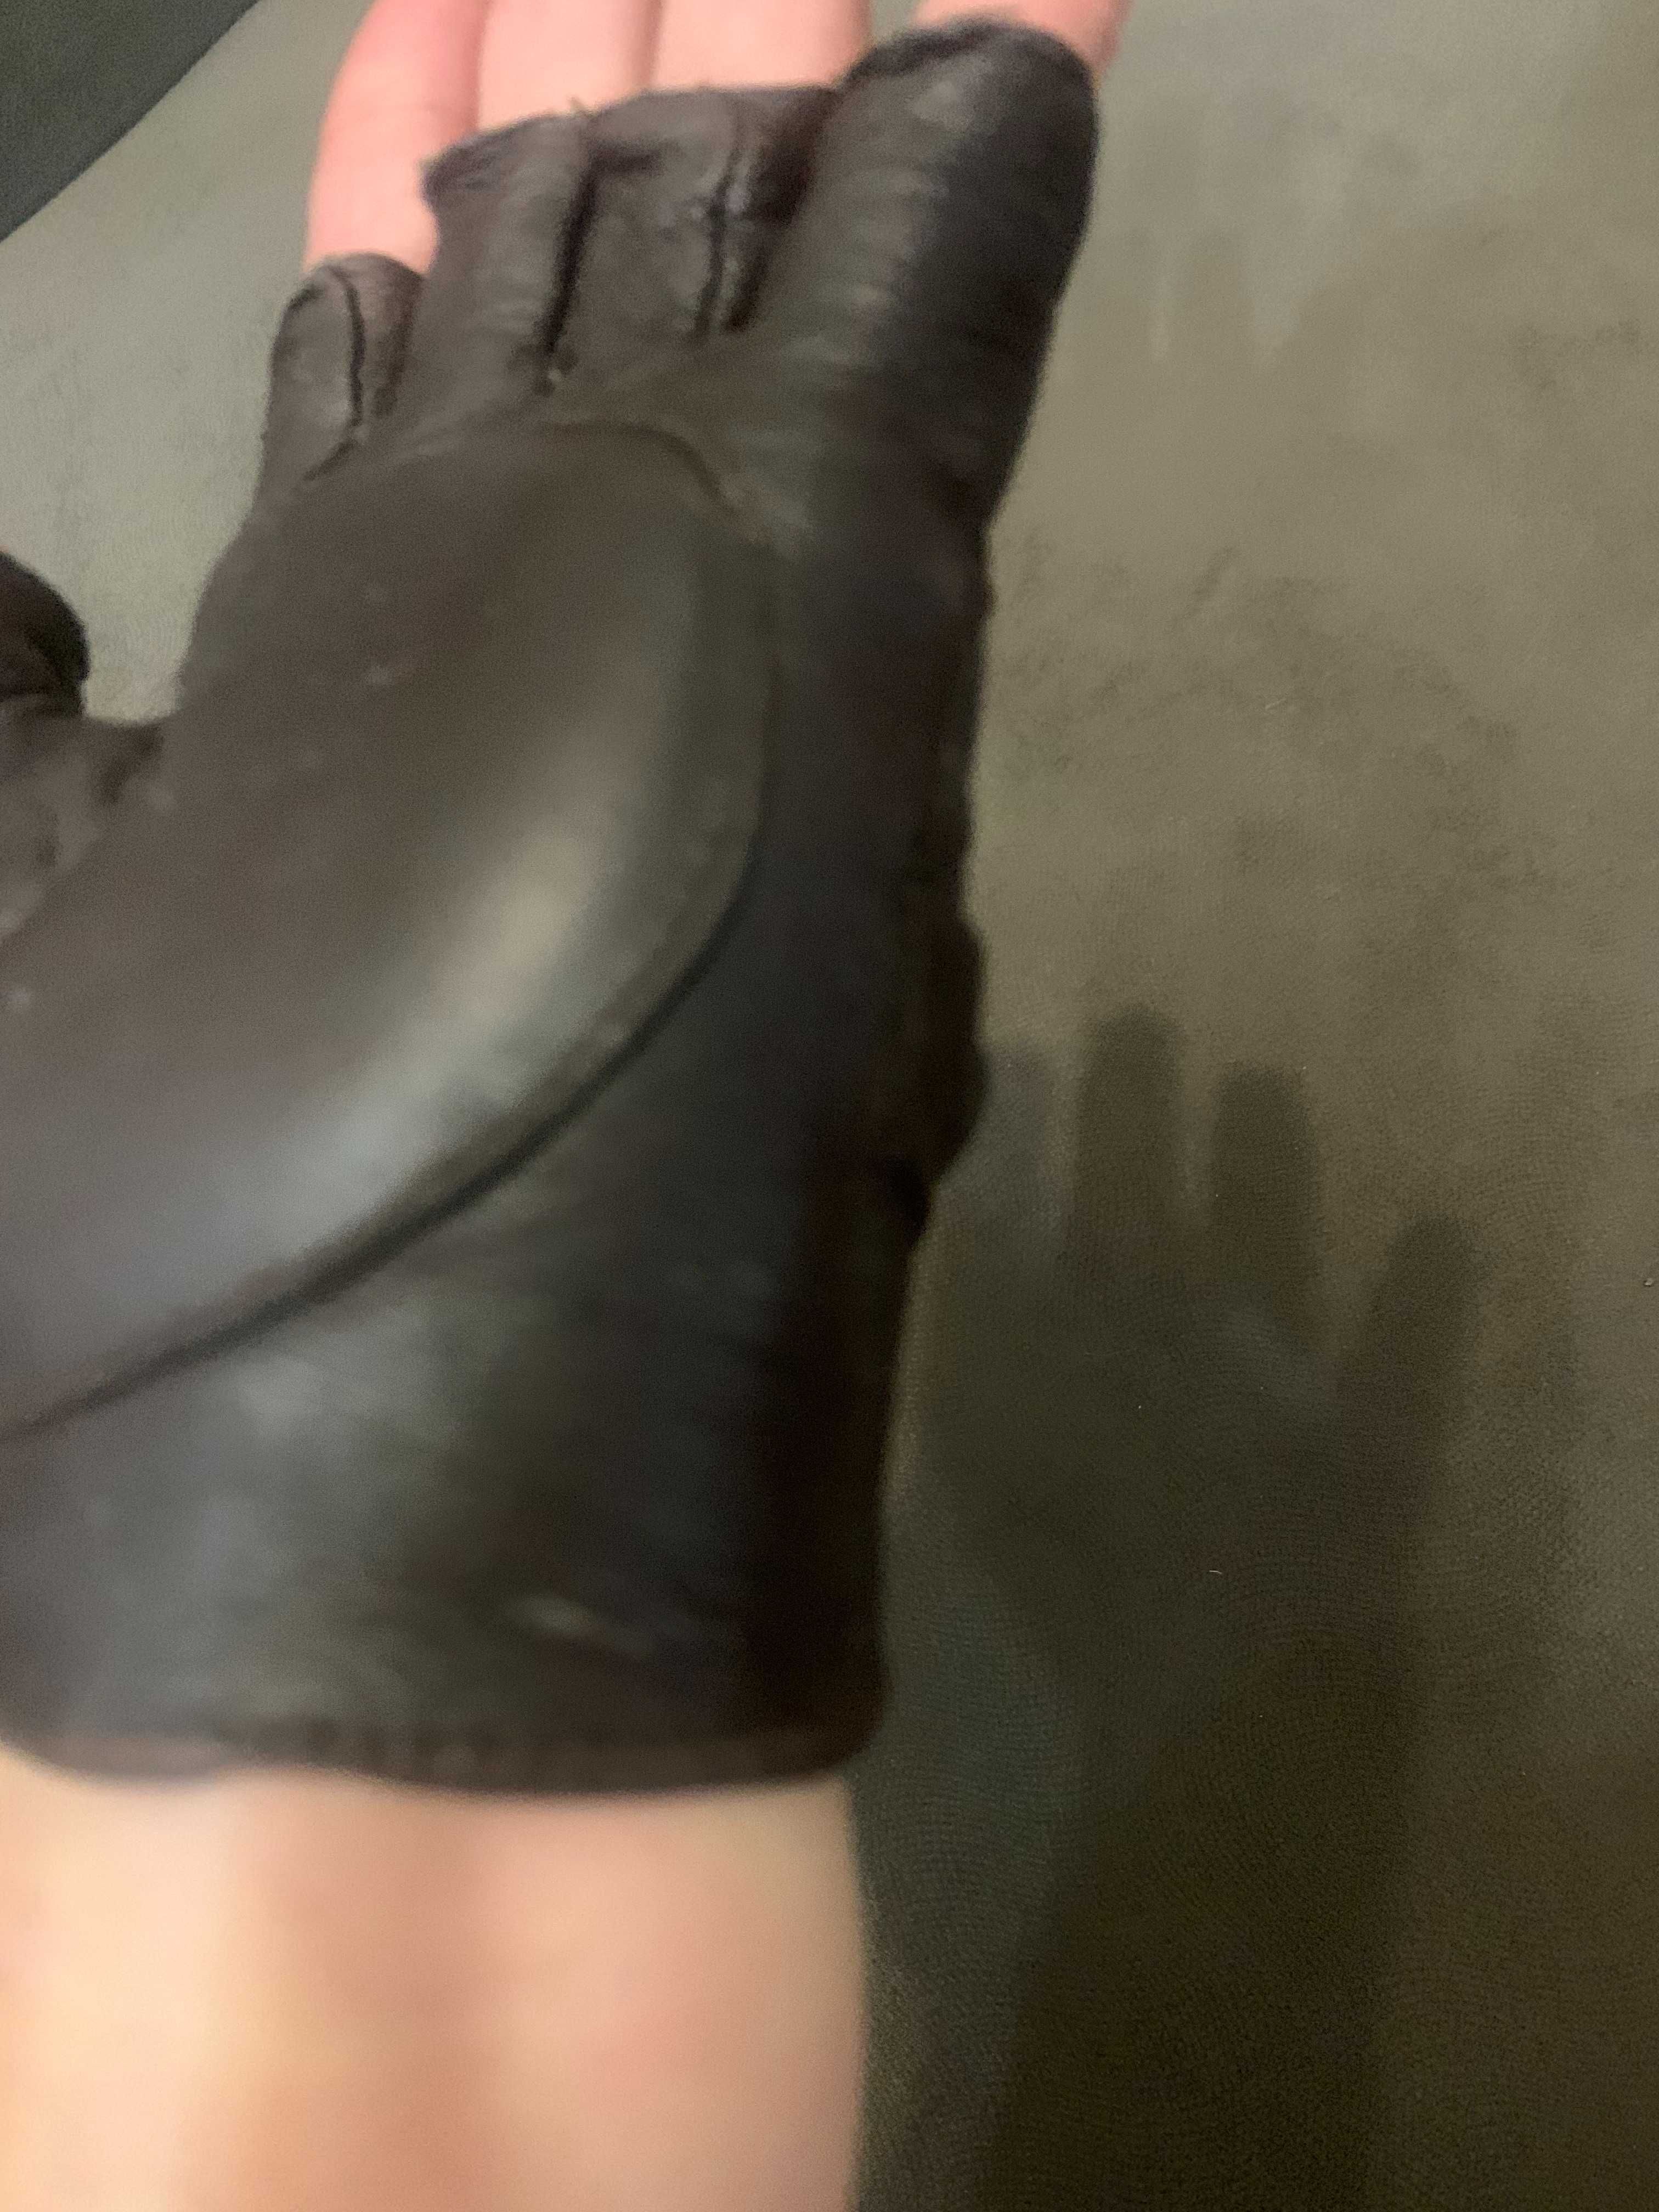 Перчатки беспалые кожаные KANGYU размер 7